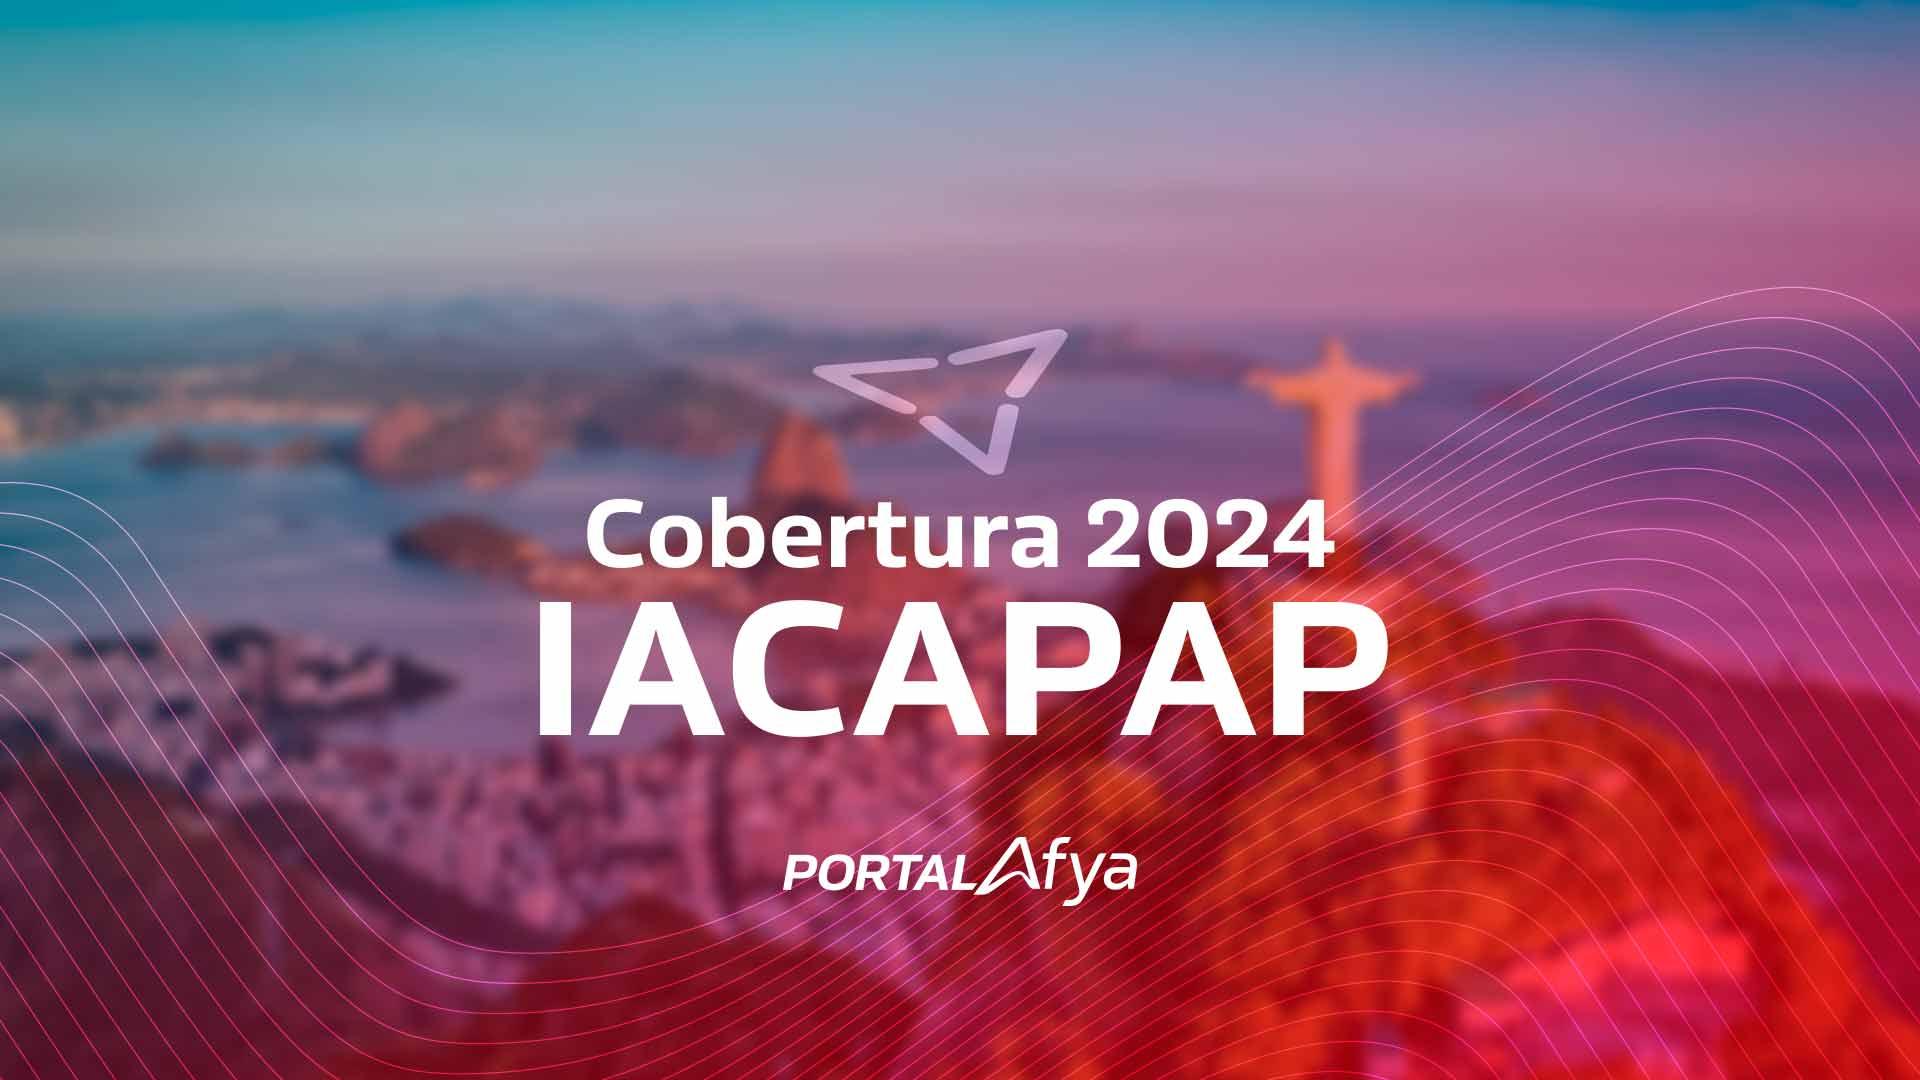 IACAPAP 2024: Highlights do congresso [videocast]